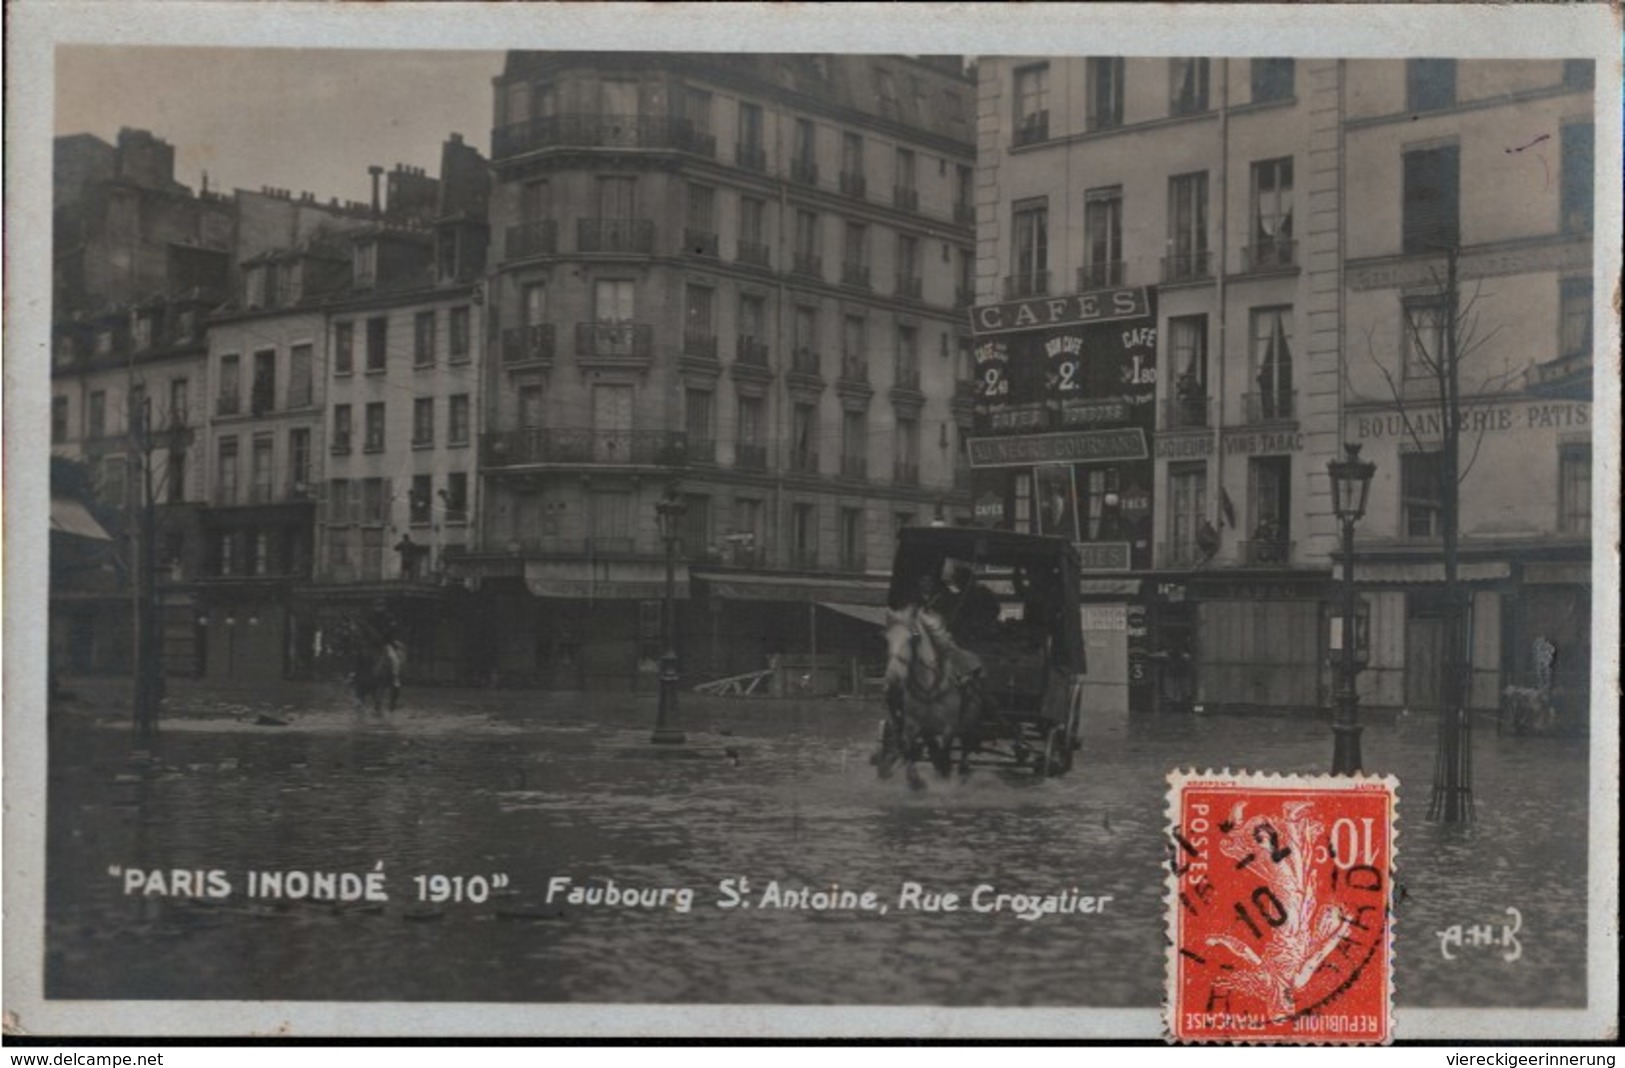 ! Cpa Paris Inonde 1910, Faubourg St. Antoine, Rue Crozatier, Kutsche, Cafe, Überschwemmung - District 11